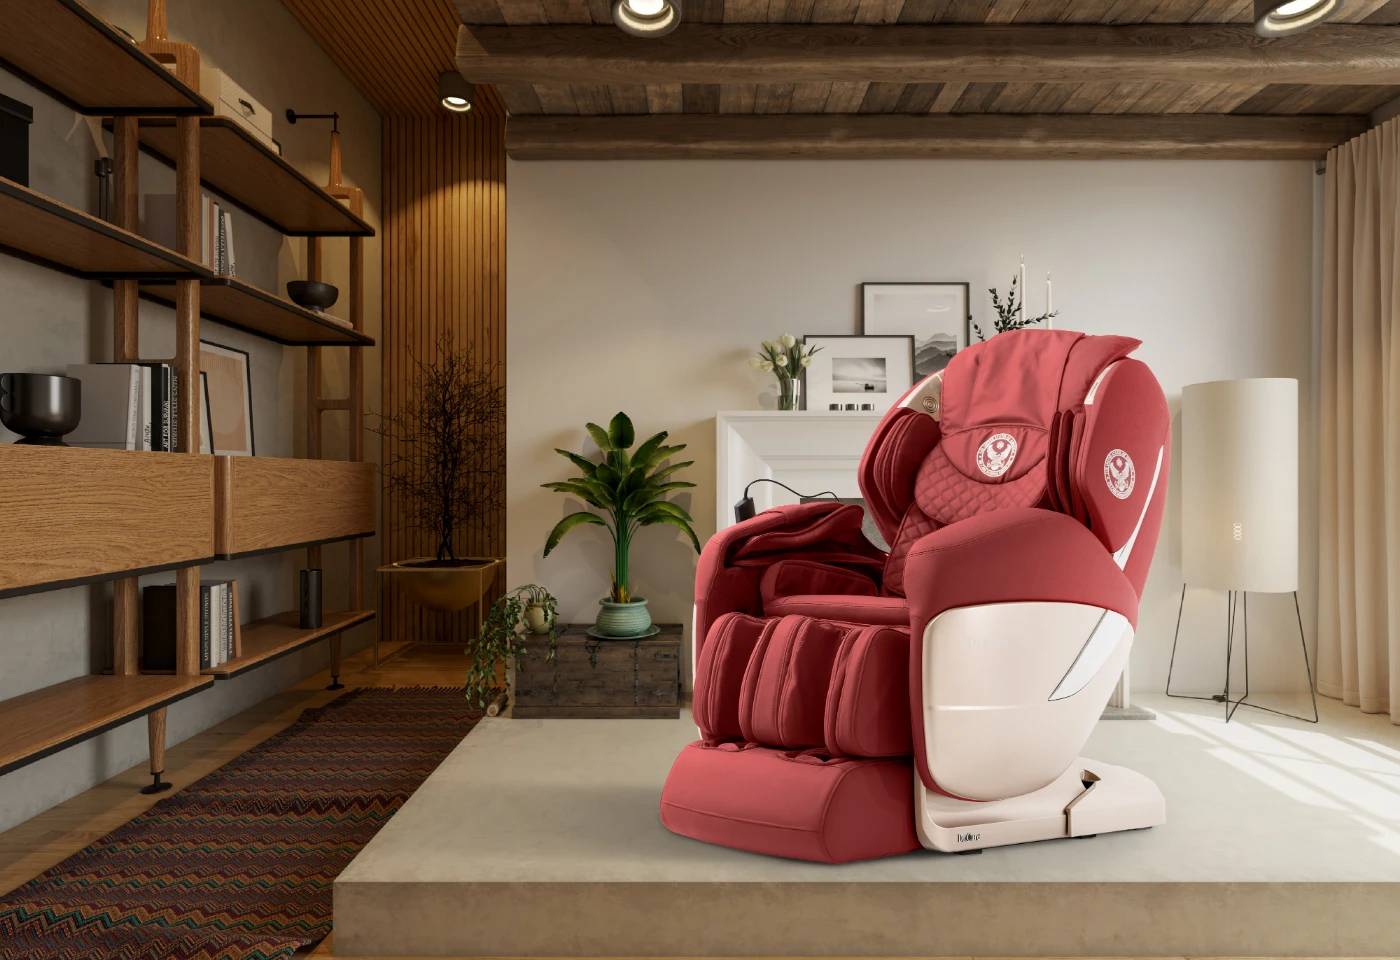 dr.care dr-xr 955 full-body massage chair living room desktop